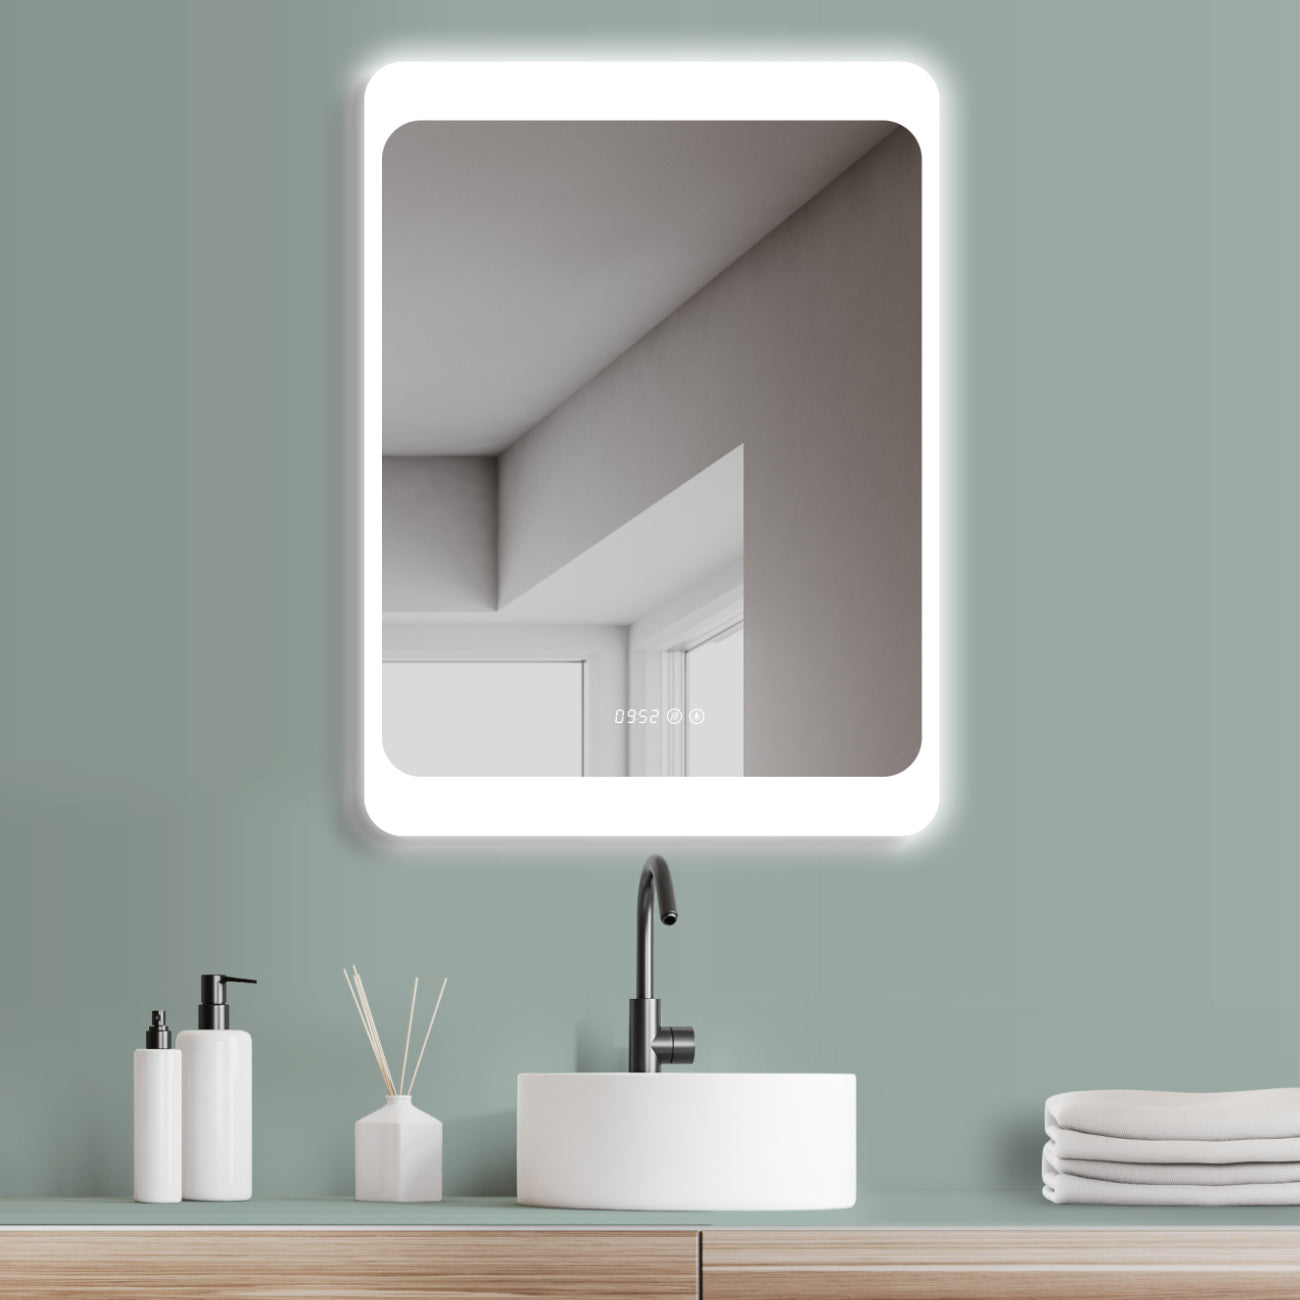 ANTIBESCHLAG LED Badspiegel mit DIGITAL UHR + Lichtwechsel Warmweiß Kaltweiß